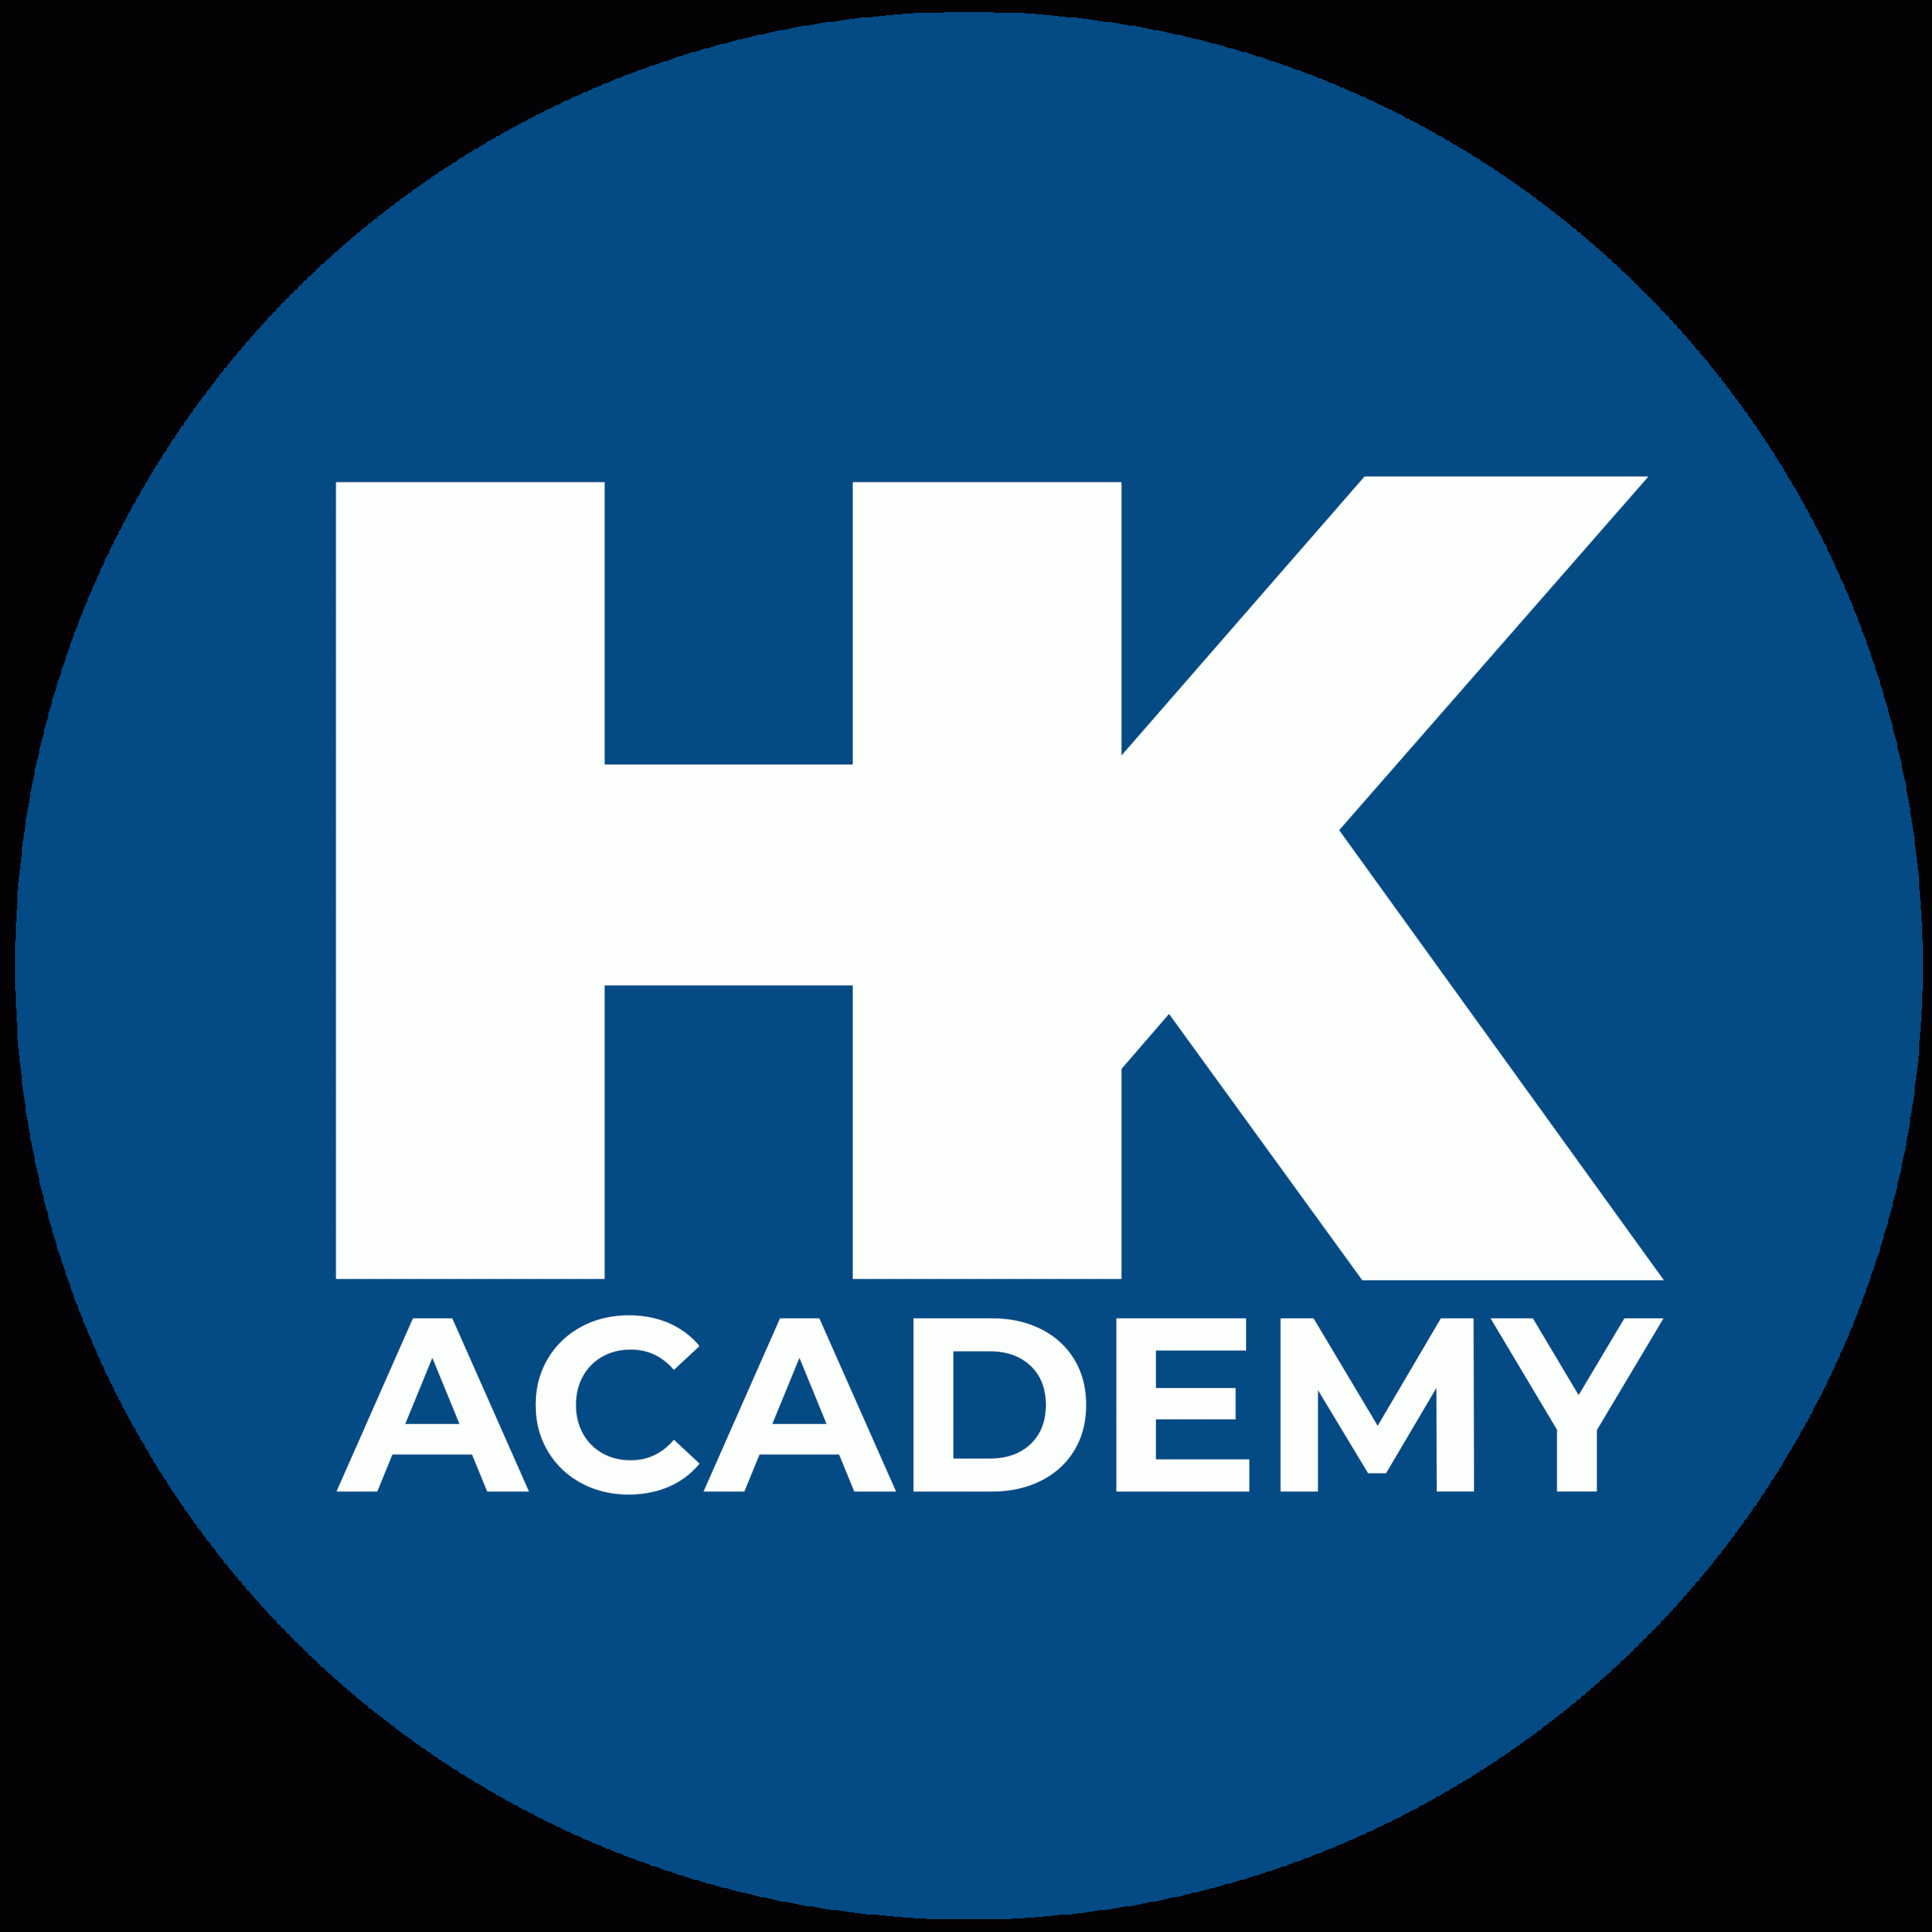 Hannes Katzenbeisser Academy